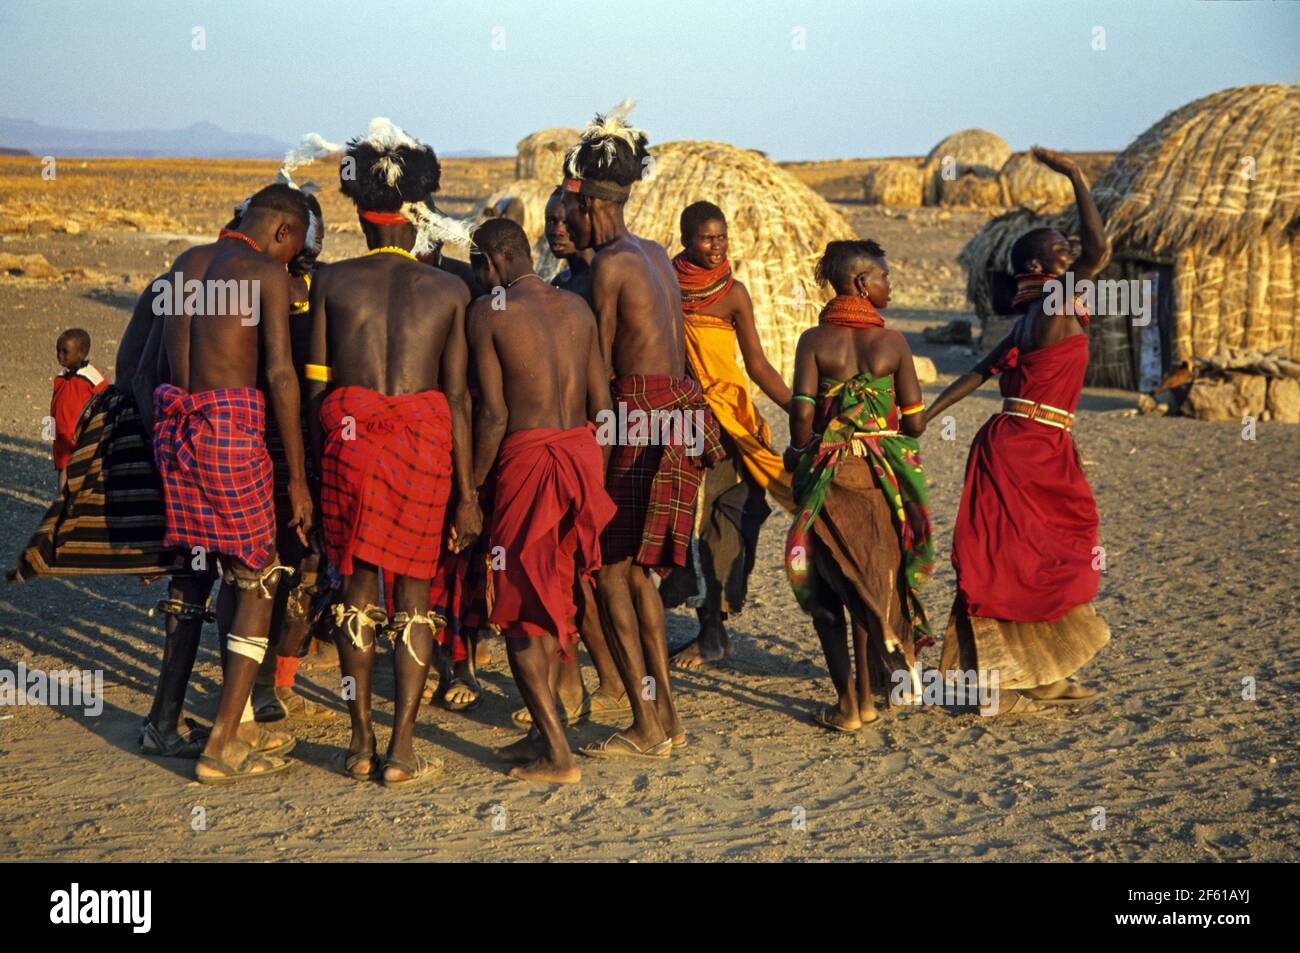 Tribal Tanz der Turkana Menschen. Turkana ist ein nilotisches Volk, das im Kreis Turkana im Nordwesten Kenias beheimatet ist Stockfoto